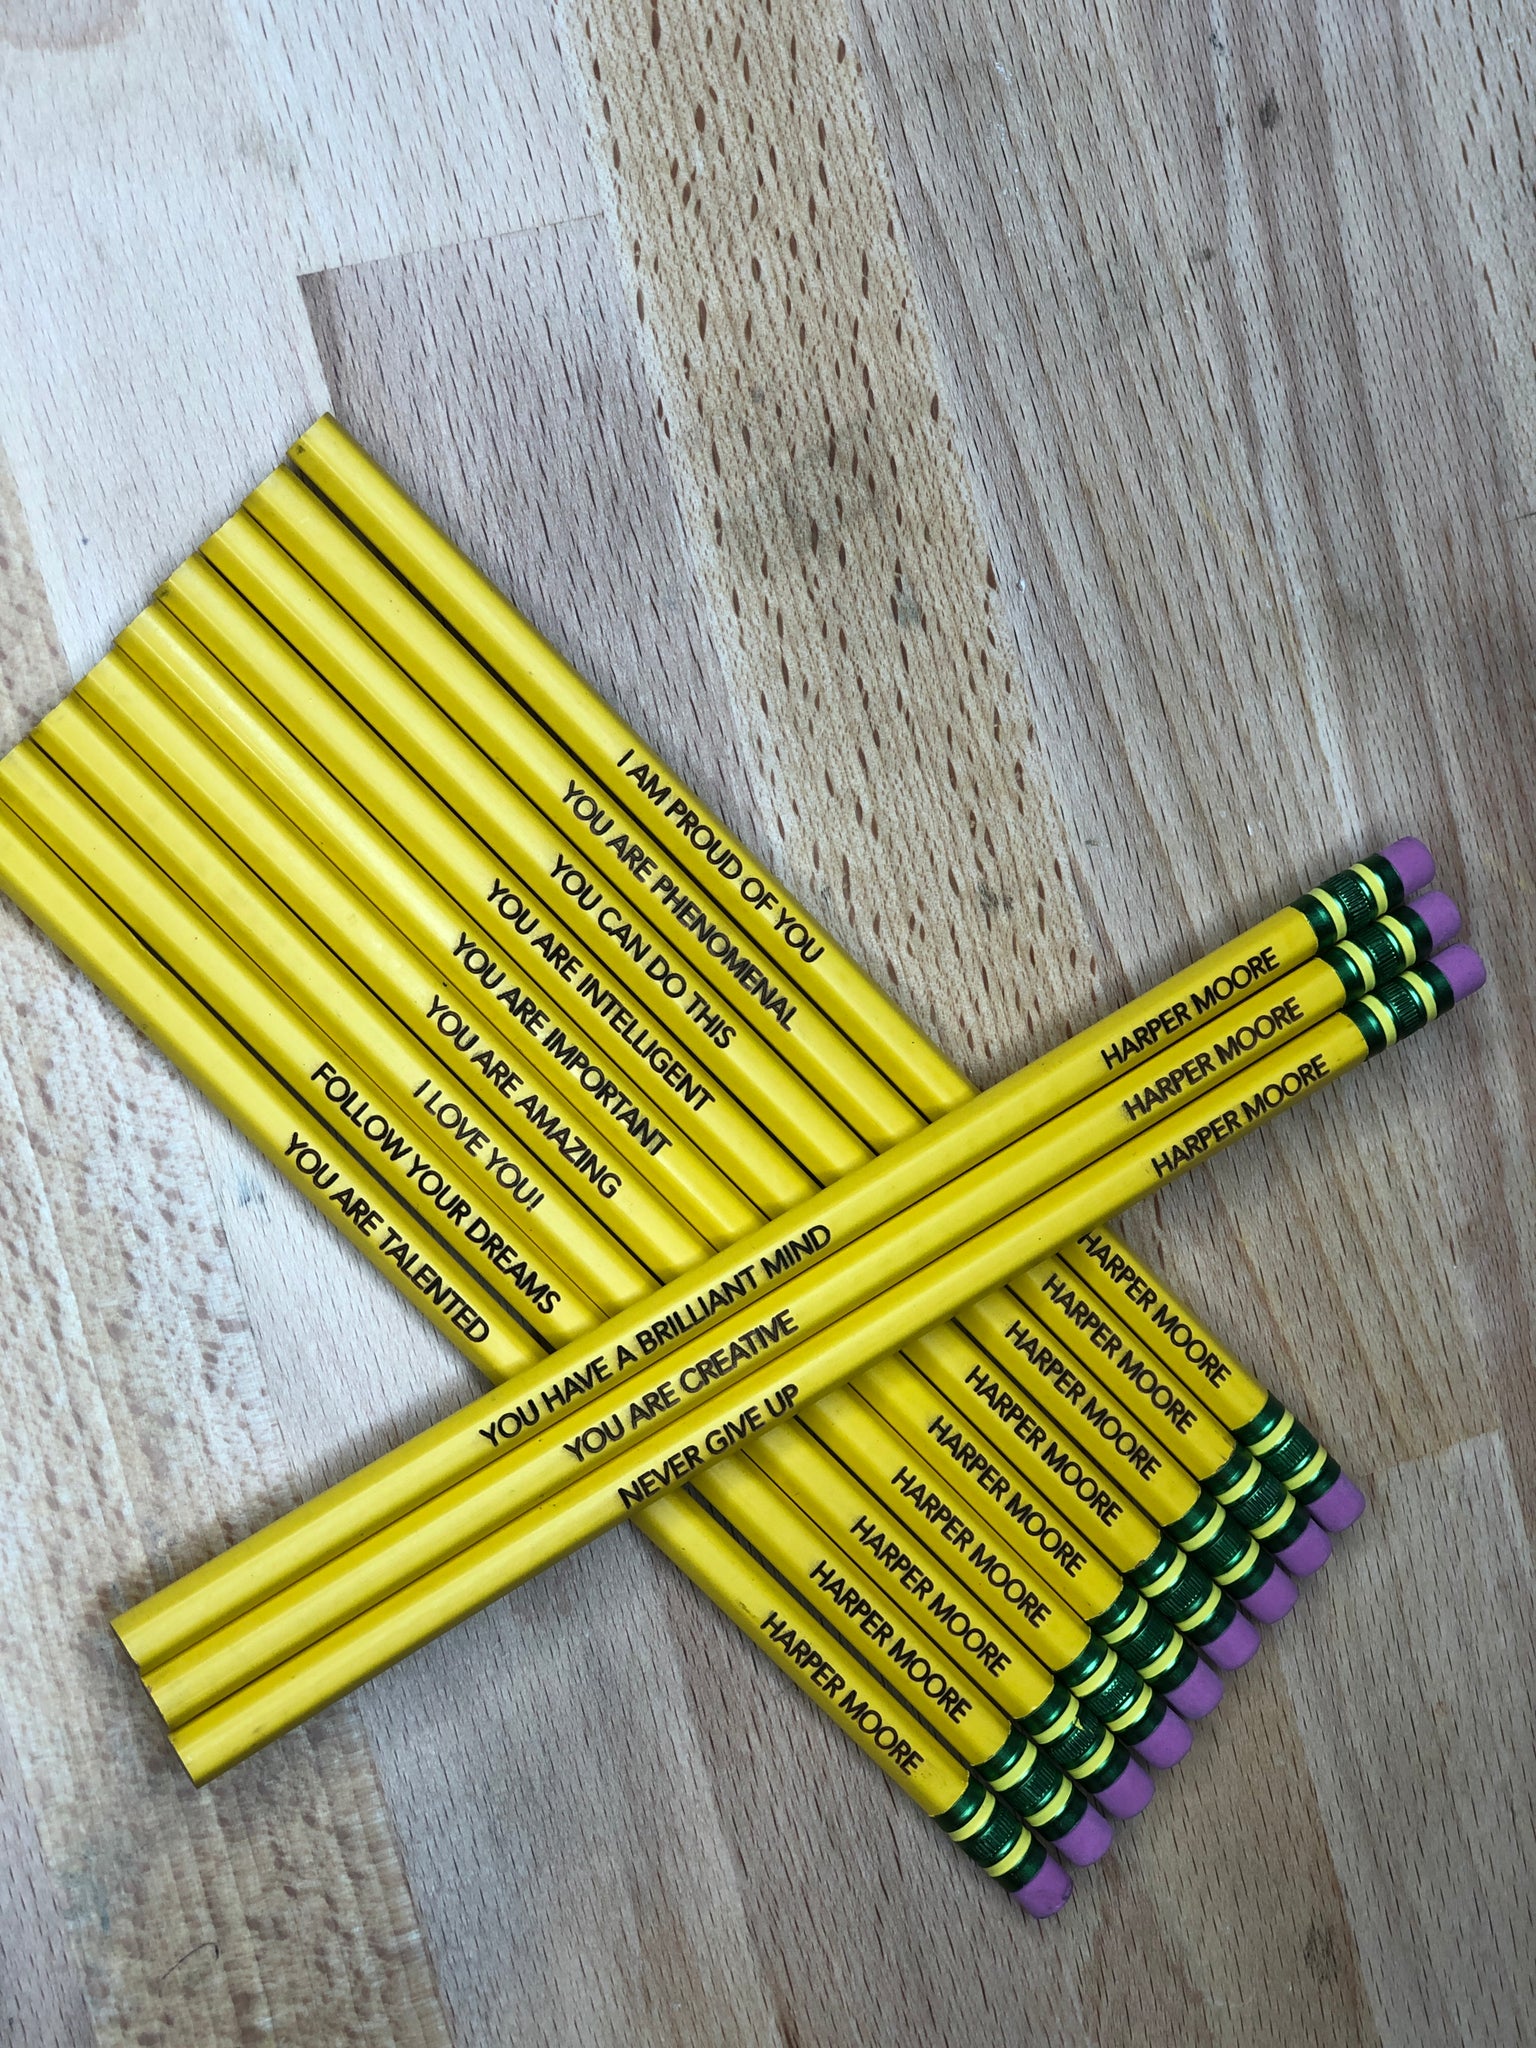 Engraved Ticonderoga Pencils – K&A Designs